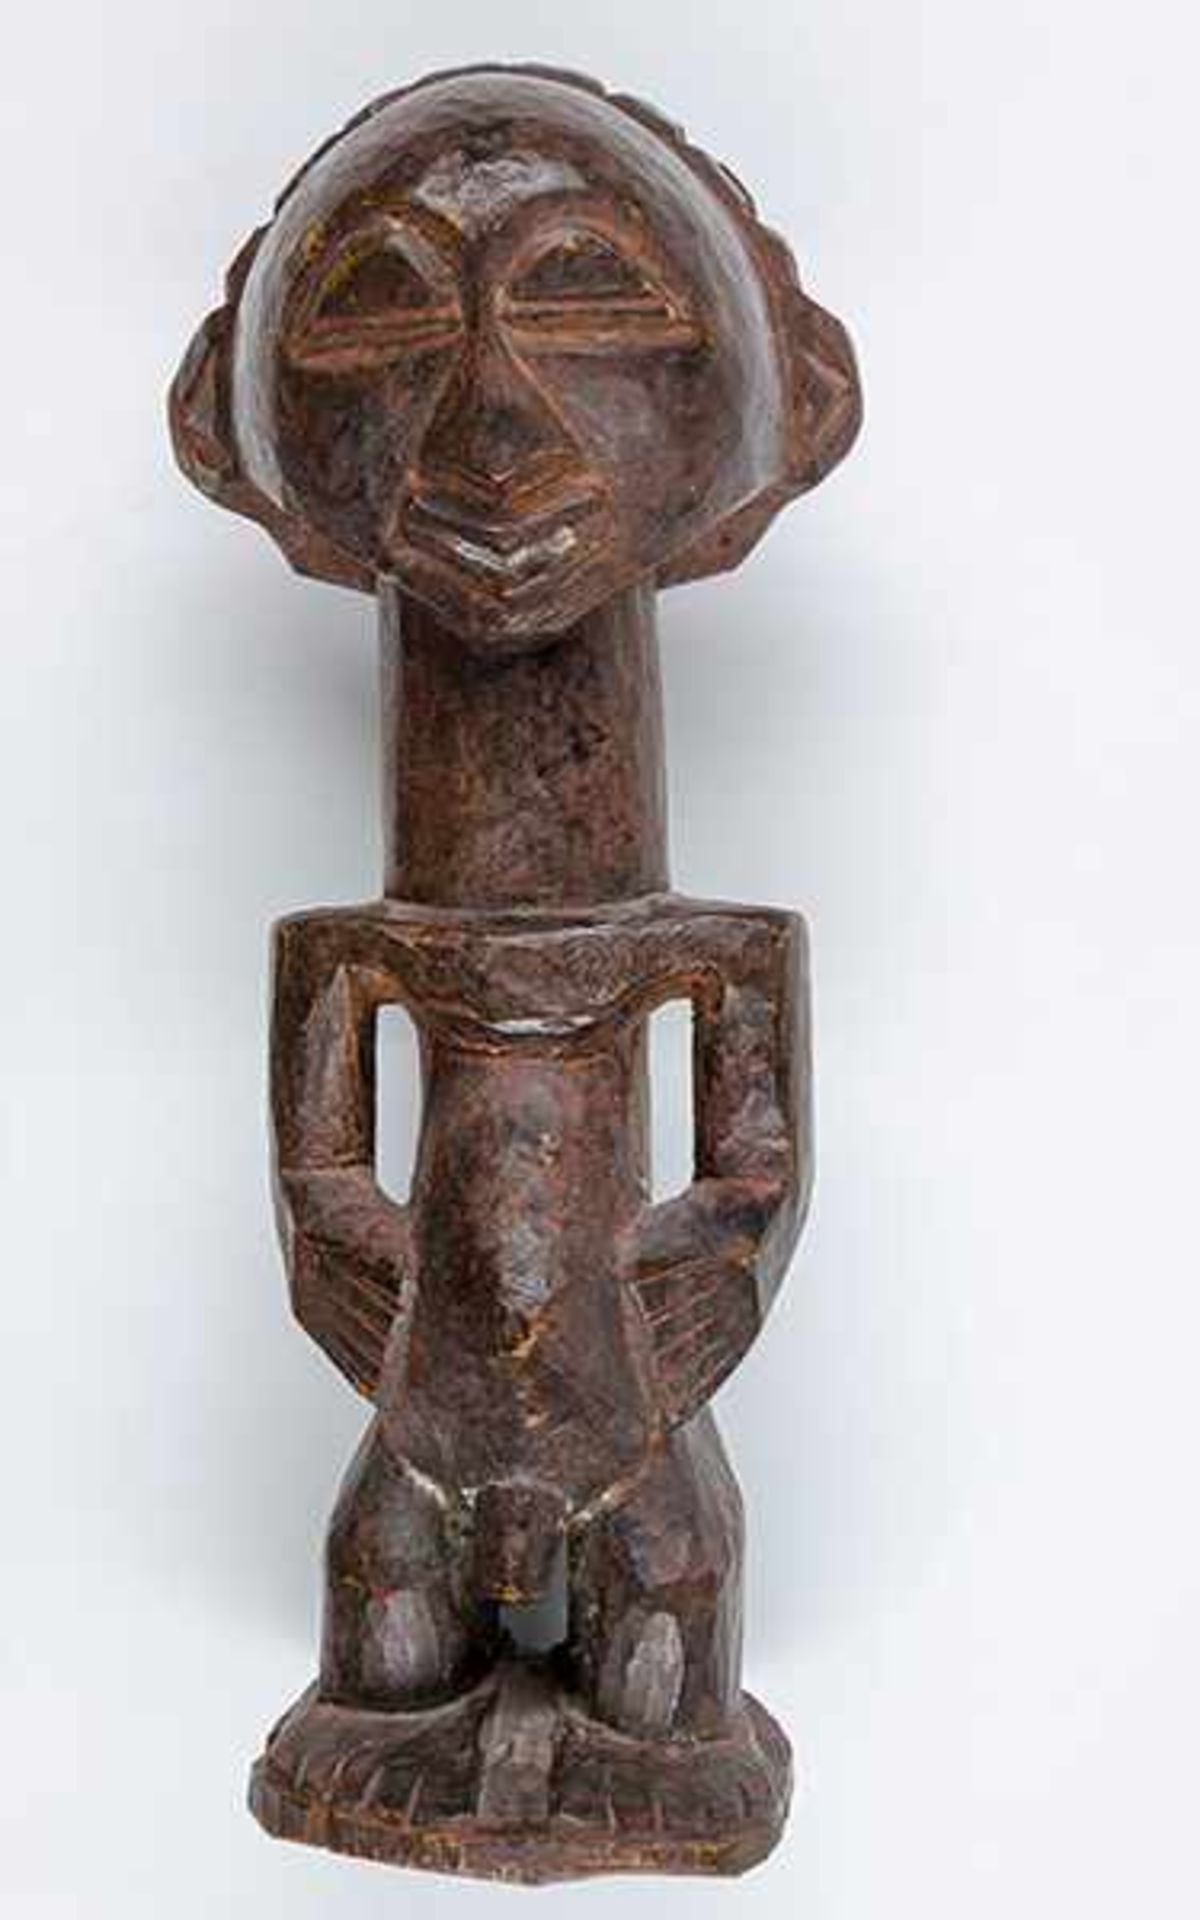 Afrikana - - Männliche Figur. Luba. Holz. Größe: 34 x 11 x 12 cm.Mit leichten Gebrauchsspuren. - - Bild 2 aus 5